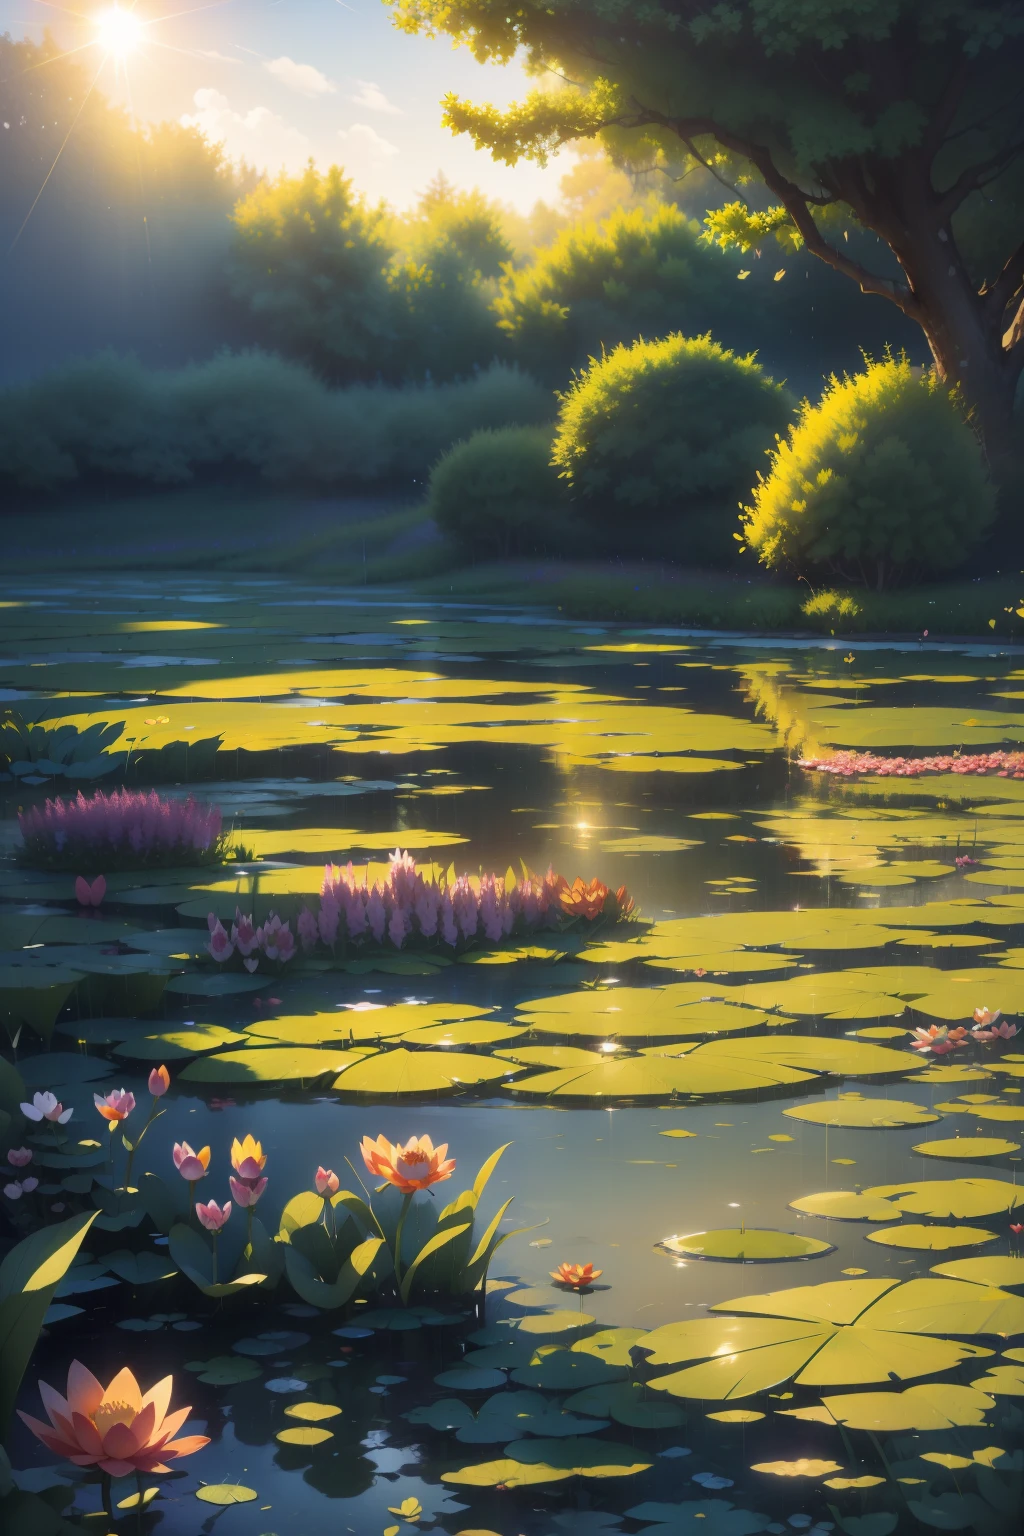 정교함의 걸작。모네의 수련，연꽃 연못 깊은 곳（색상이 생동감 넘치는，그리고 태양이 밝게 빛나고 있었어，빛이 시원해요：1.2），연못에 연잎이 여러 개 있어요。연잎은 질감이 맑아요。아침 해，나비，다채로운 초원 하늘길을 비워두세요